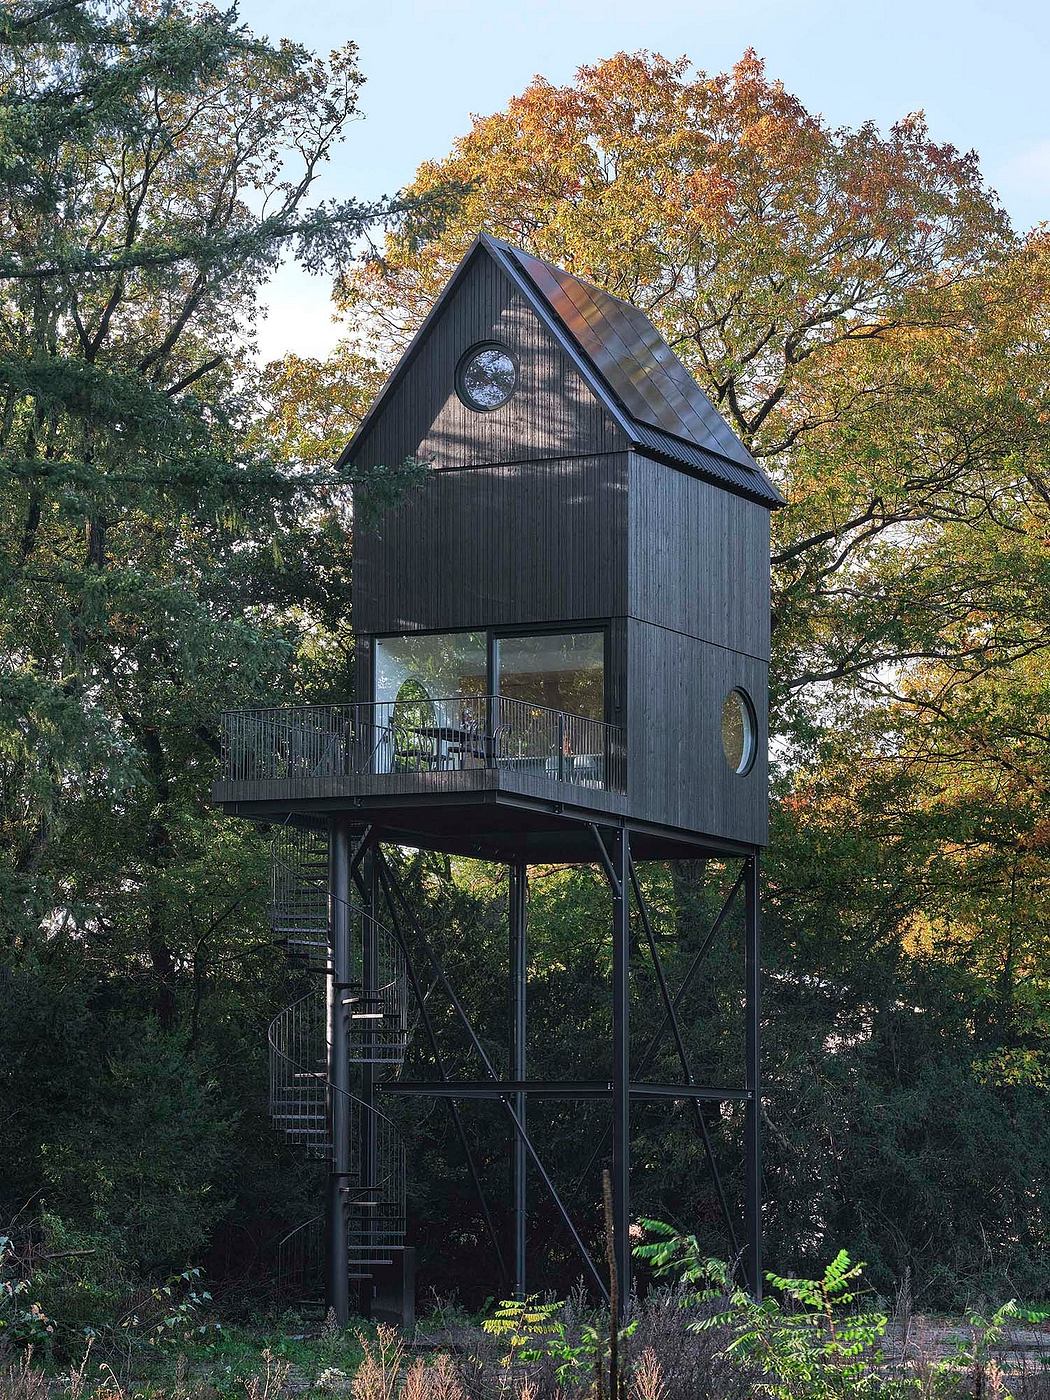 Buitenverblijf Nest: A Unique Birdhouse-Inspired Getaway in the Netherlands